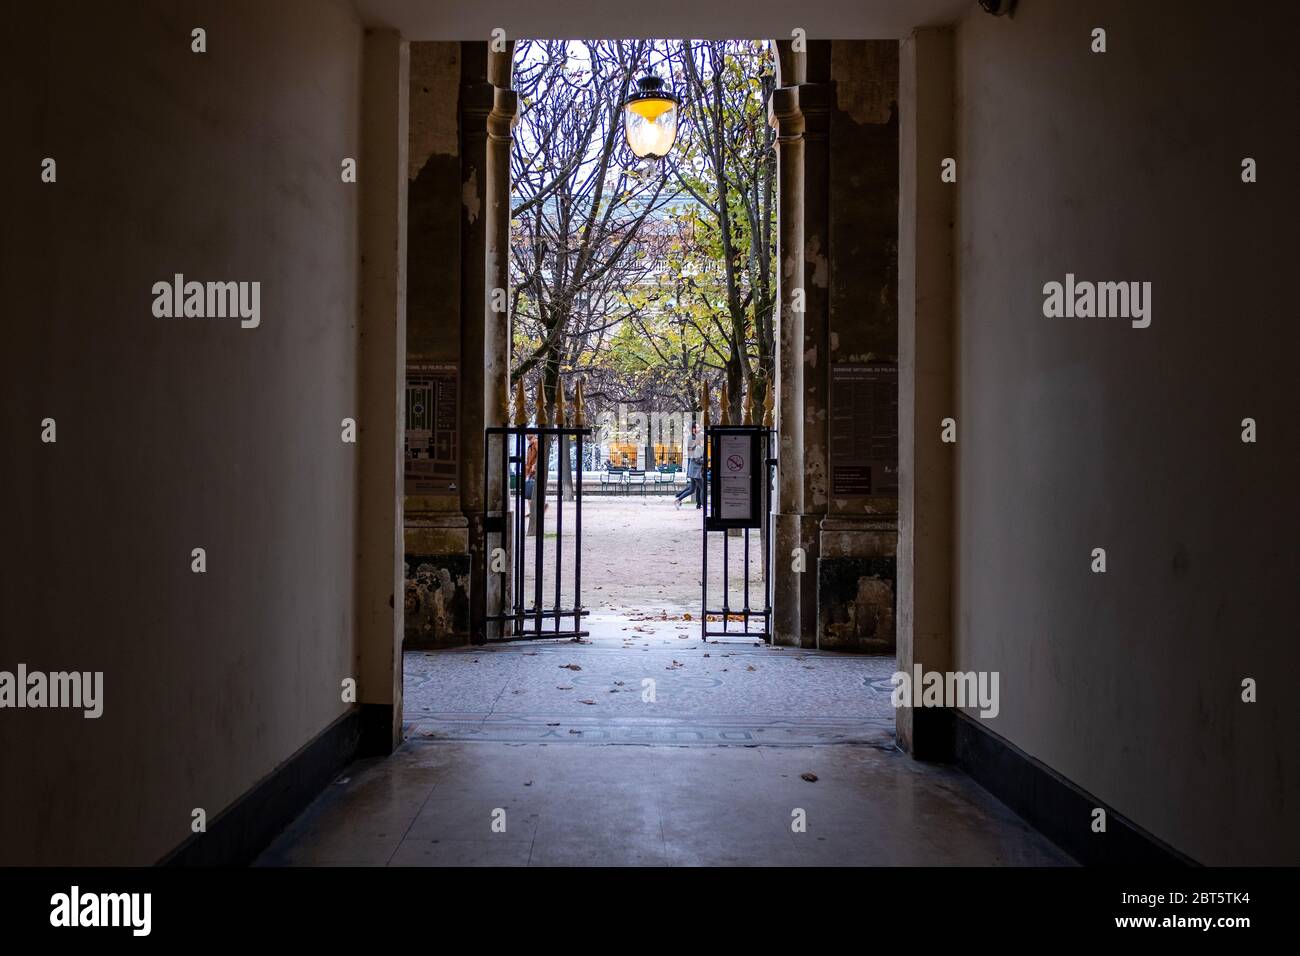 Paris, Frankreich - 2. Nov 2019: Ein traditioneller Pariser Durchgang durch ein Tor. Foto aufgenommen im Palais-Royal, am frühen Abend mit anleuchtendem Licht Stockfoto